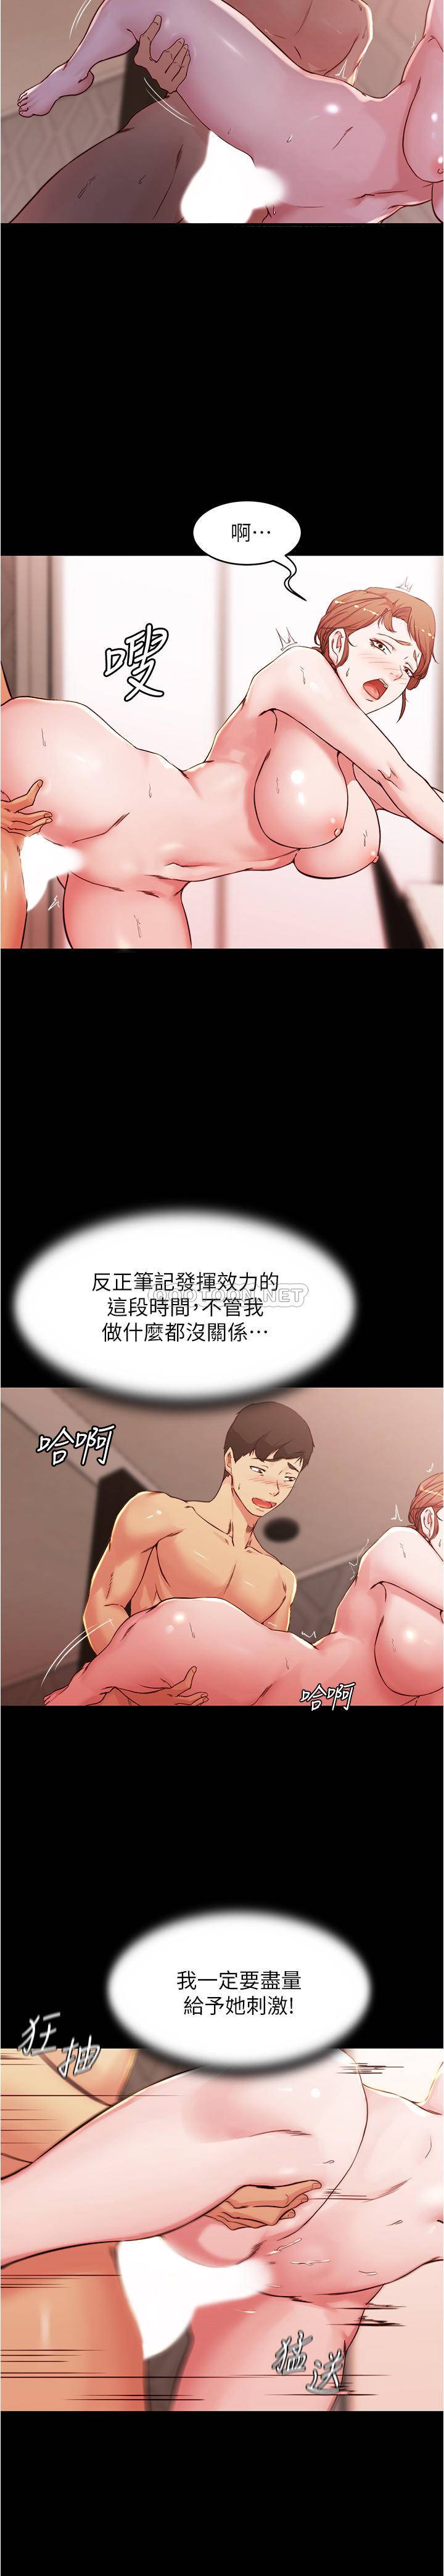 韩国污漫画 小褲褲筆記 第30话 - 忘不掉的强烈快感 12